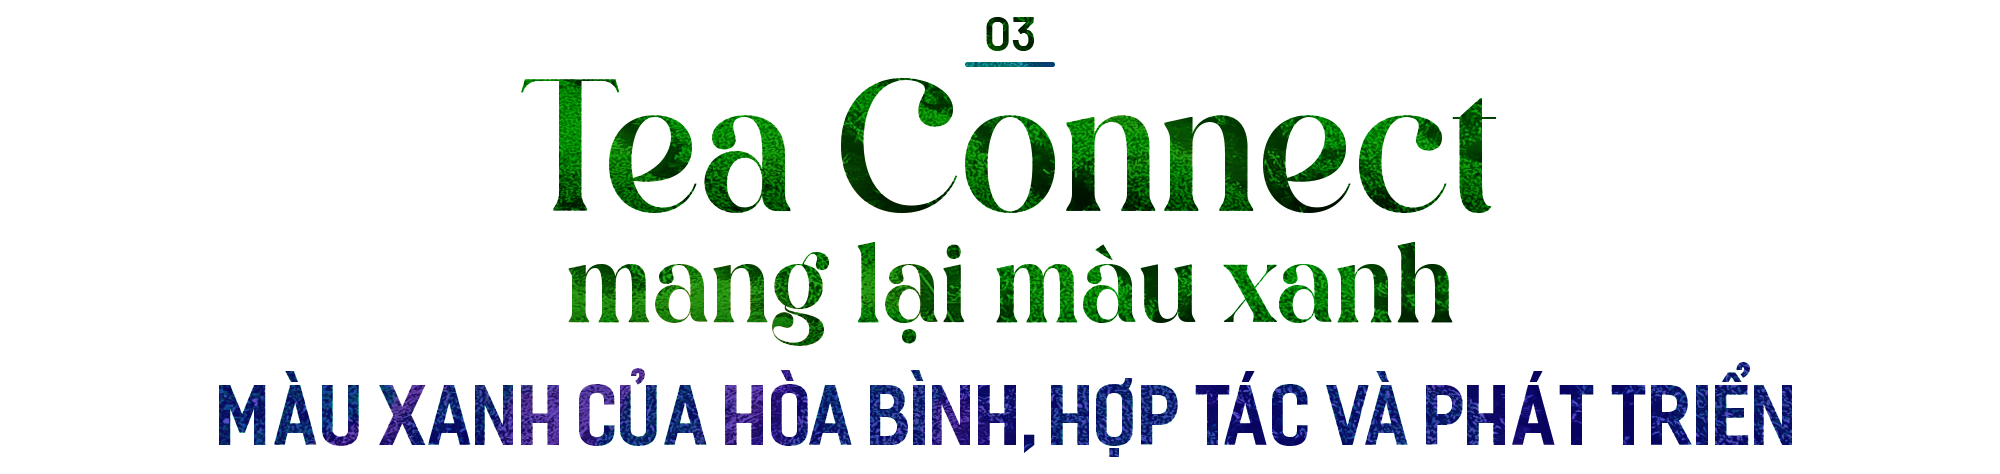 Tea Connect – một khái niệm mới trong công tác đối ngoại, đưa văn hóa trà Việt ra khắp thế giới - Ảnh 9.